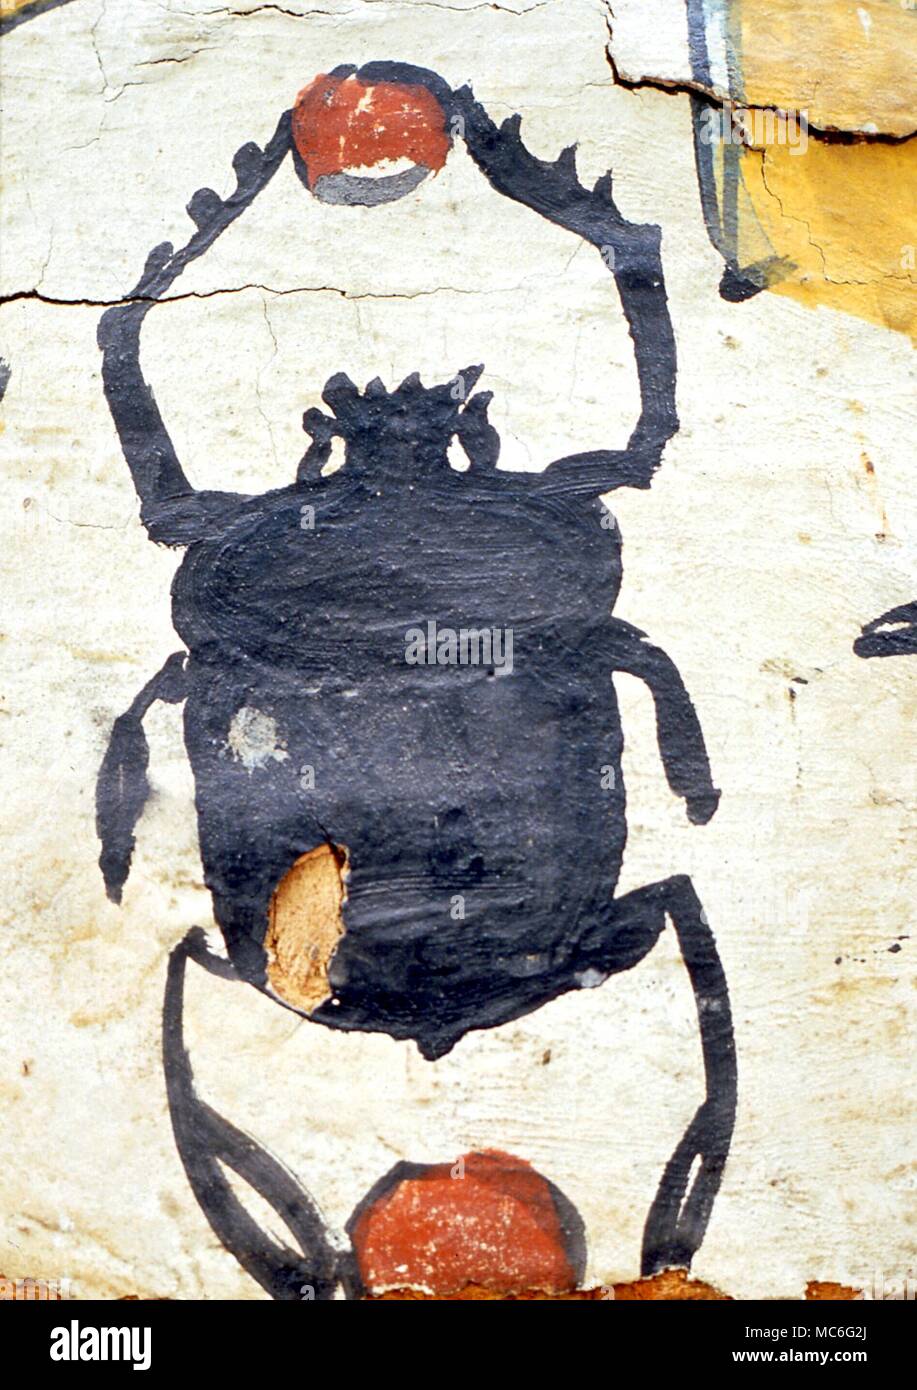 Animaux - Scarabeus beetle, tenant une image du soleil, symbole d'Horus. Détail d'une momie de la période ptolémaïque de la région de l'Egypte Karnak Banque D'Images